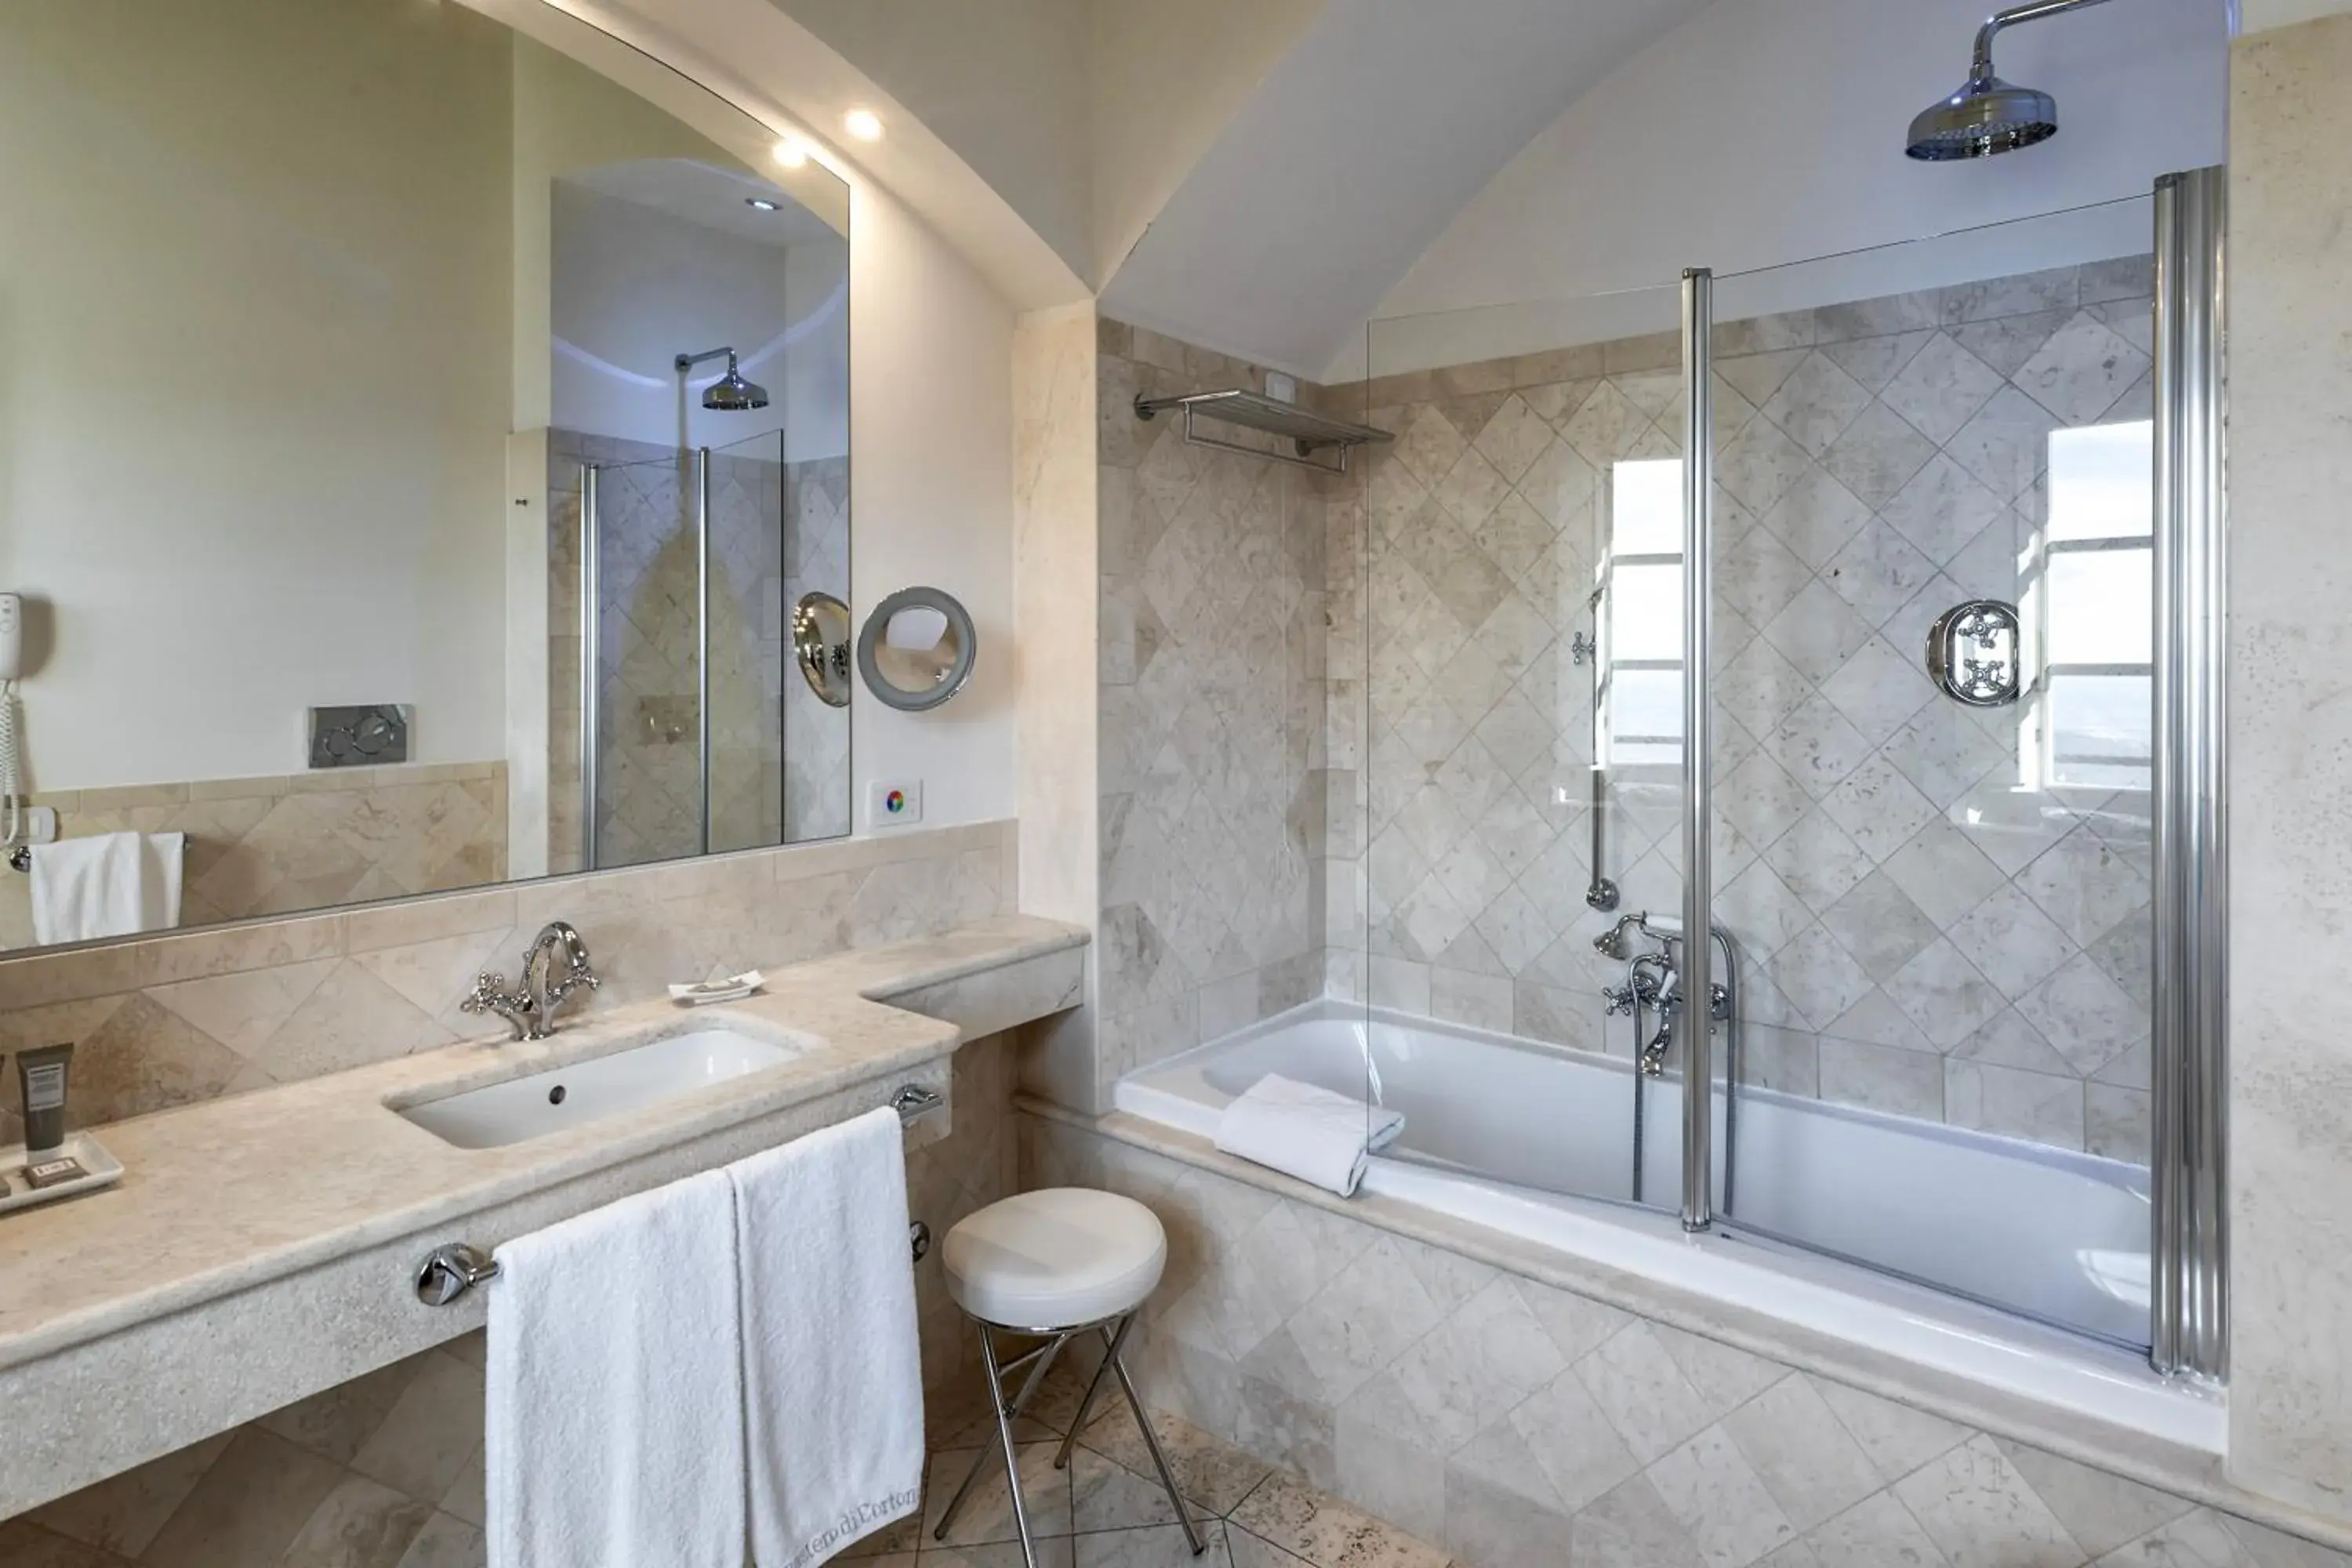 Bathroom in Monastero Di Cortona Hotel & Spa